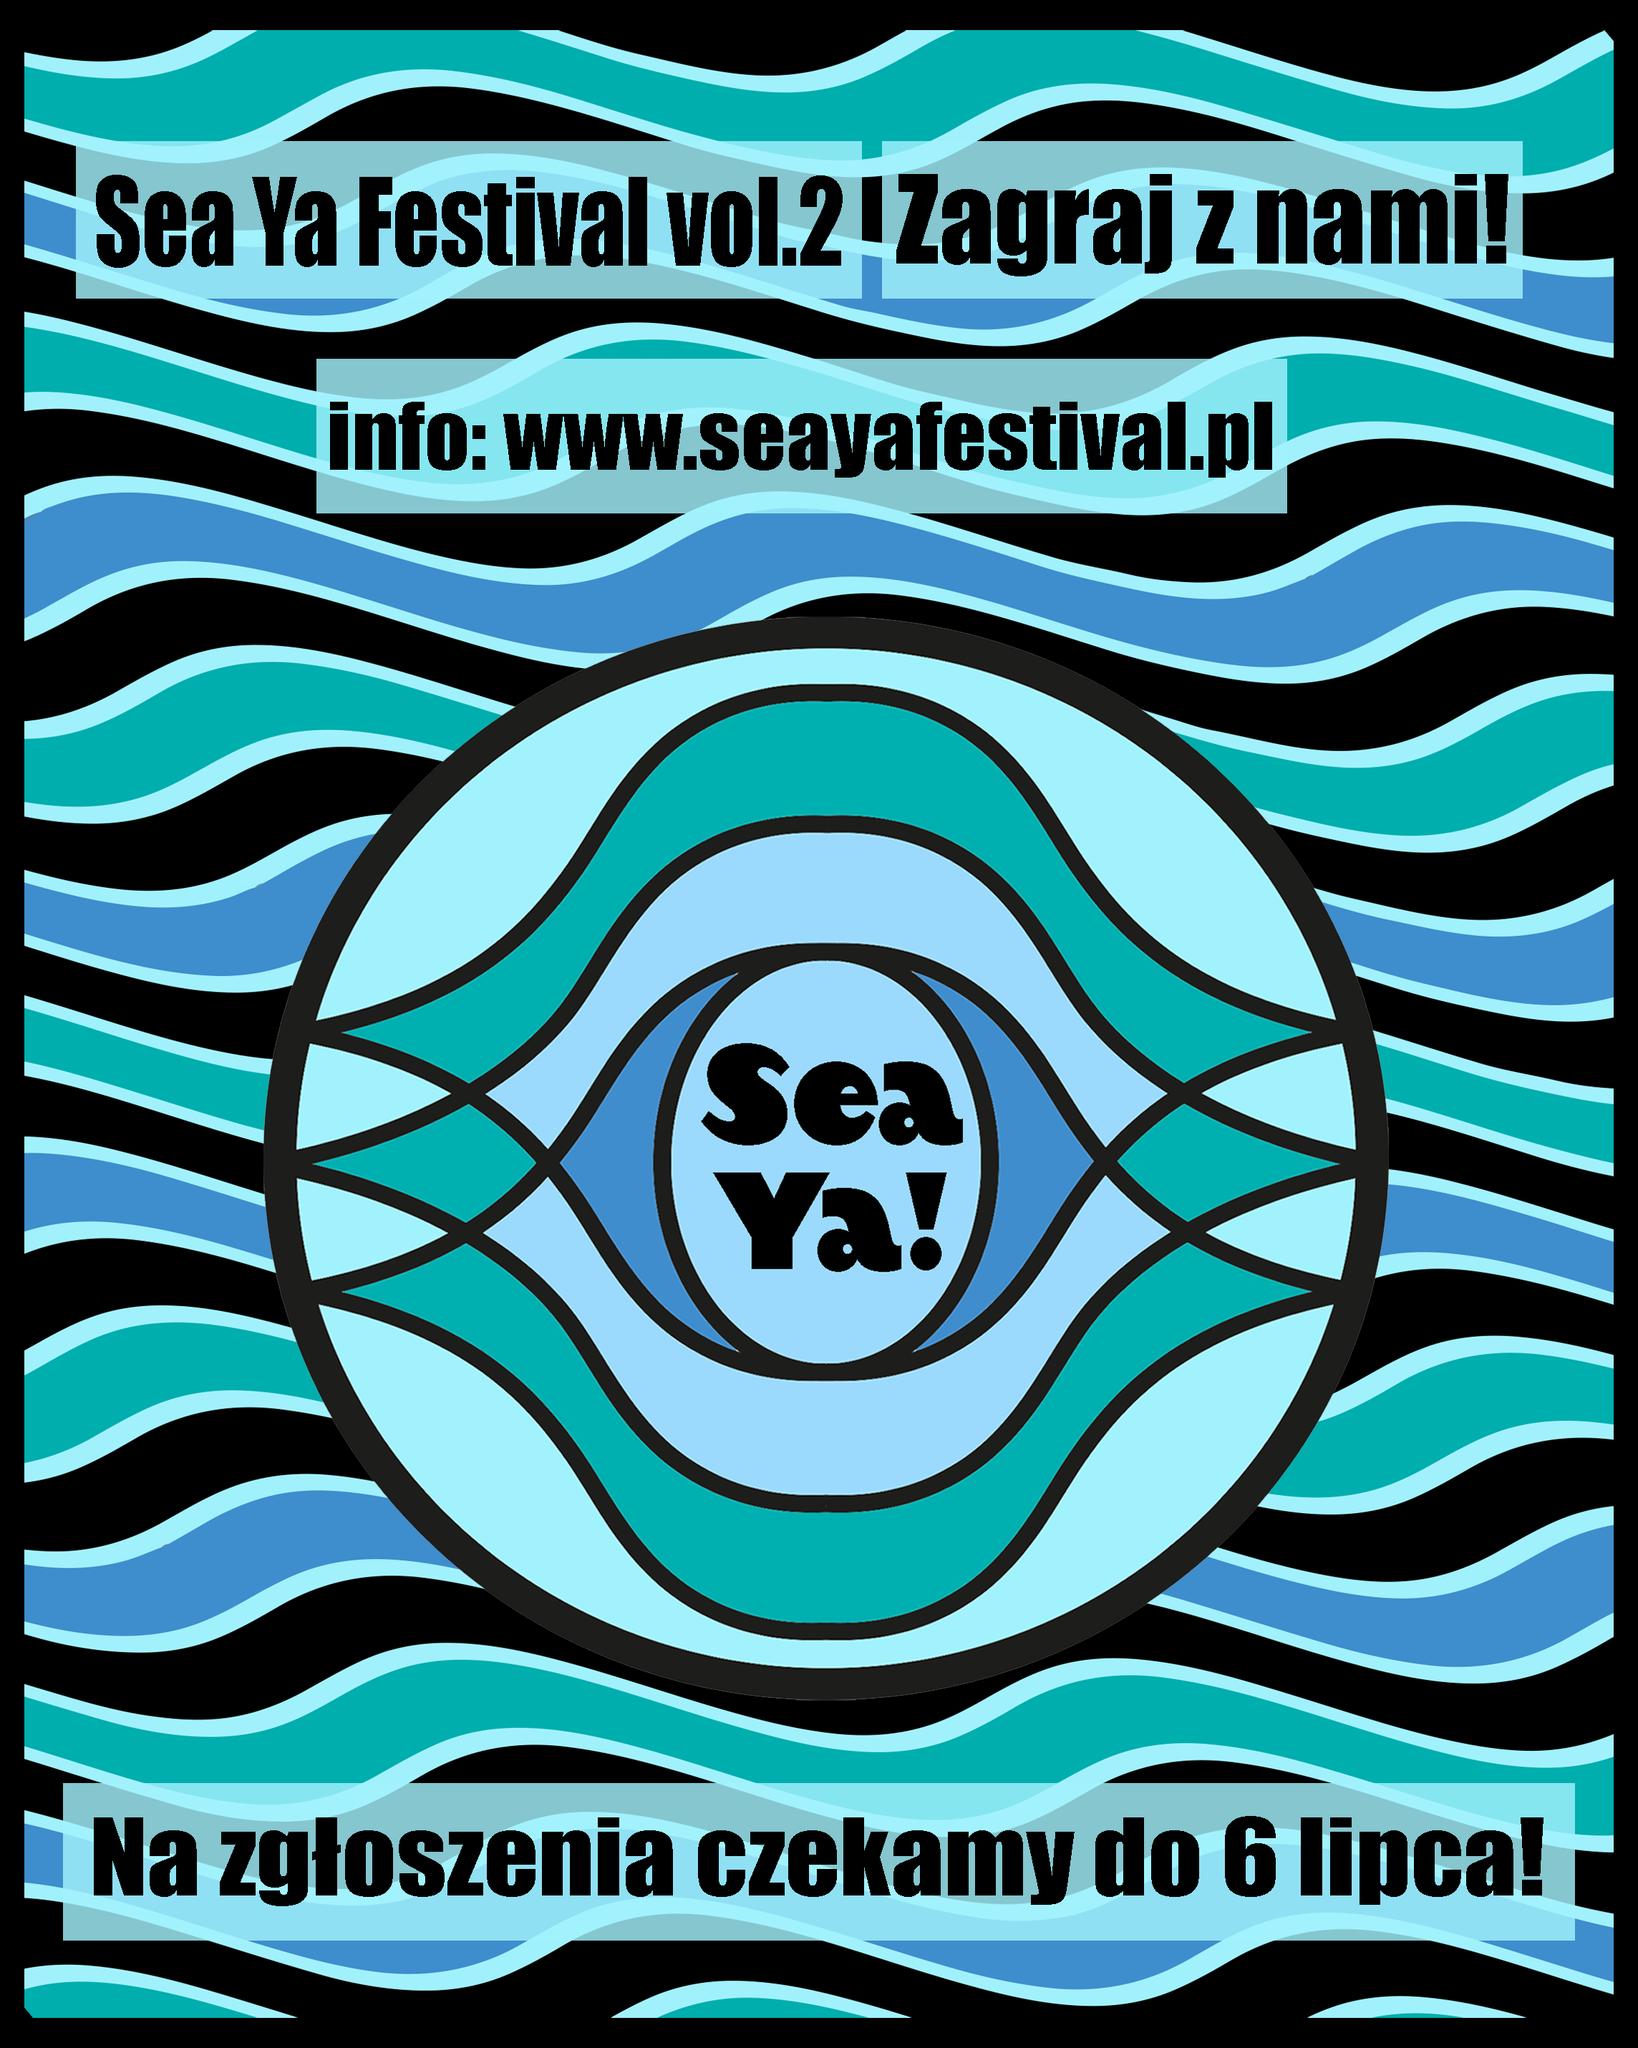 Sea Ya! Festival szuka zespołów!